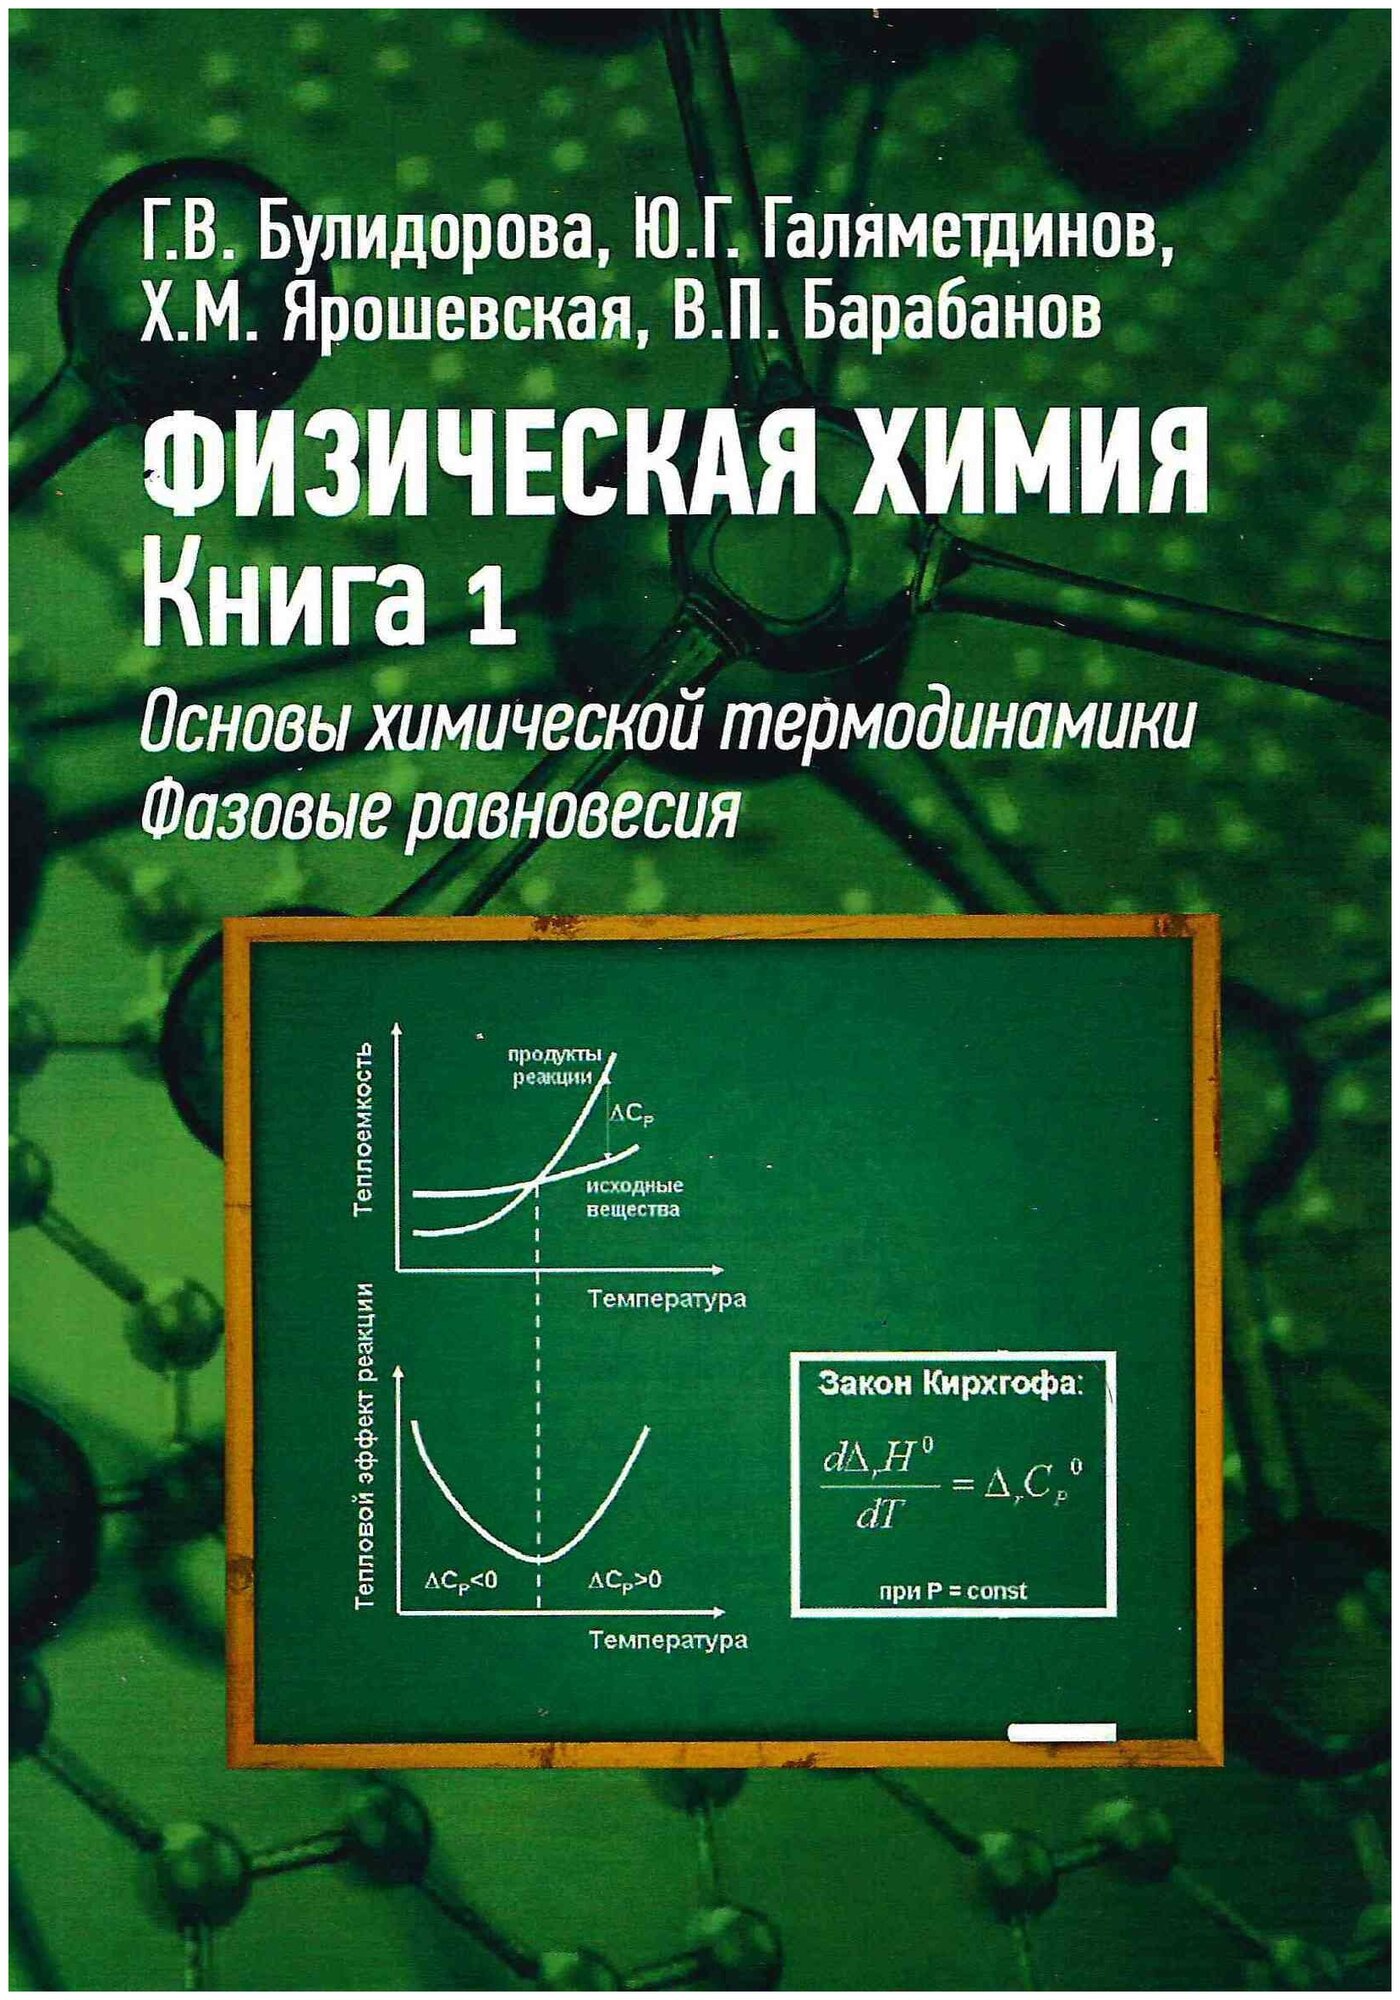 Булидорова Г. В, Галяметдинов Ю. Г. и др. Физическая химия. Книга 1. Основы химической термодинамики. Фазовые равновесия.